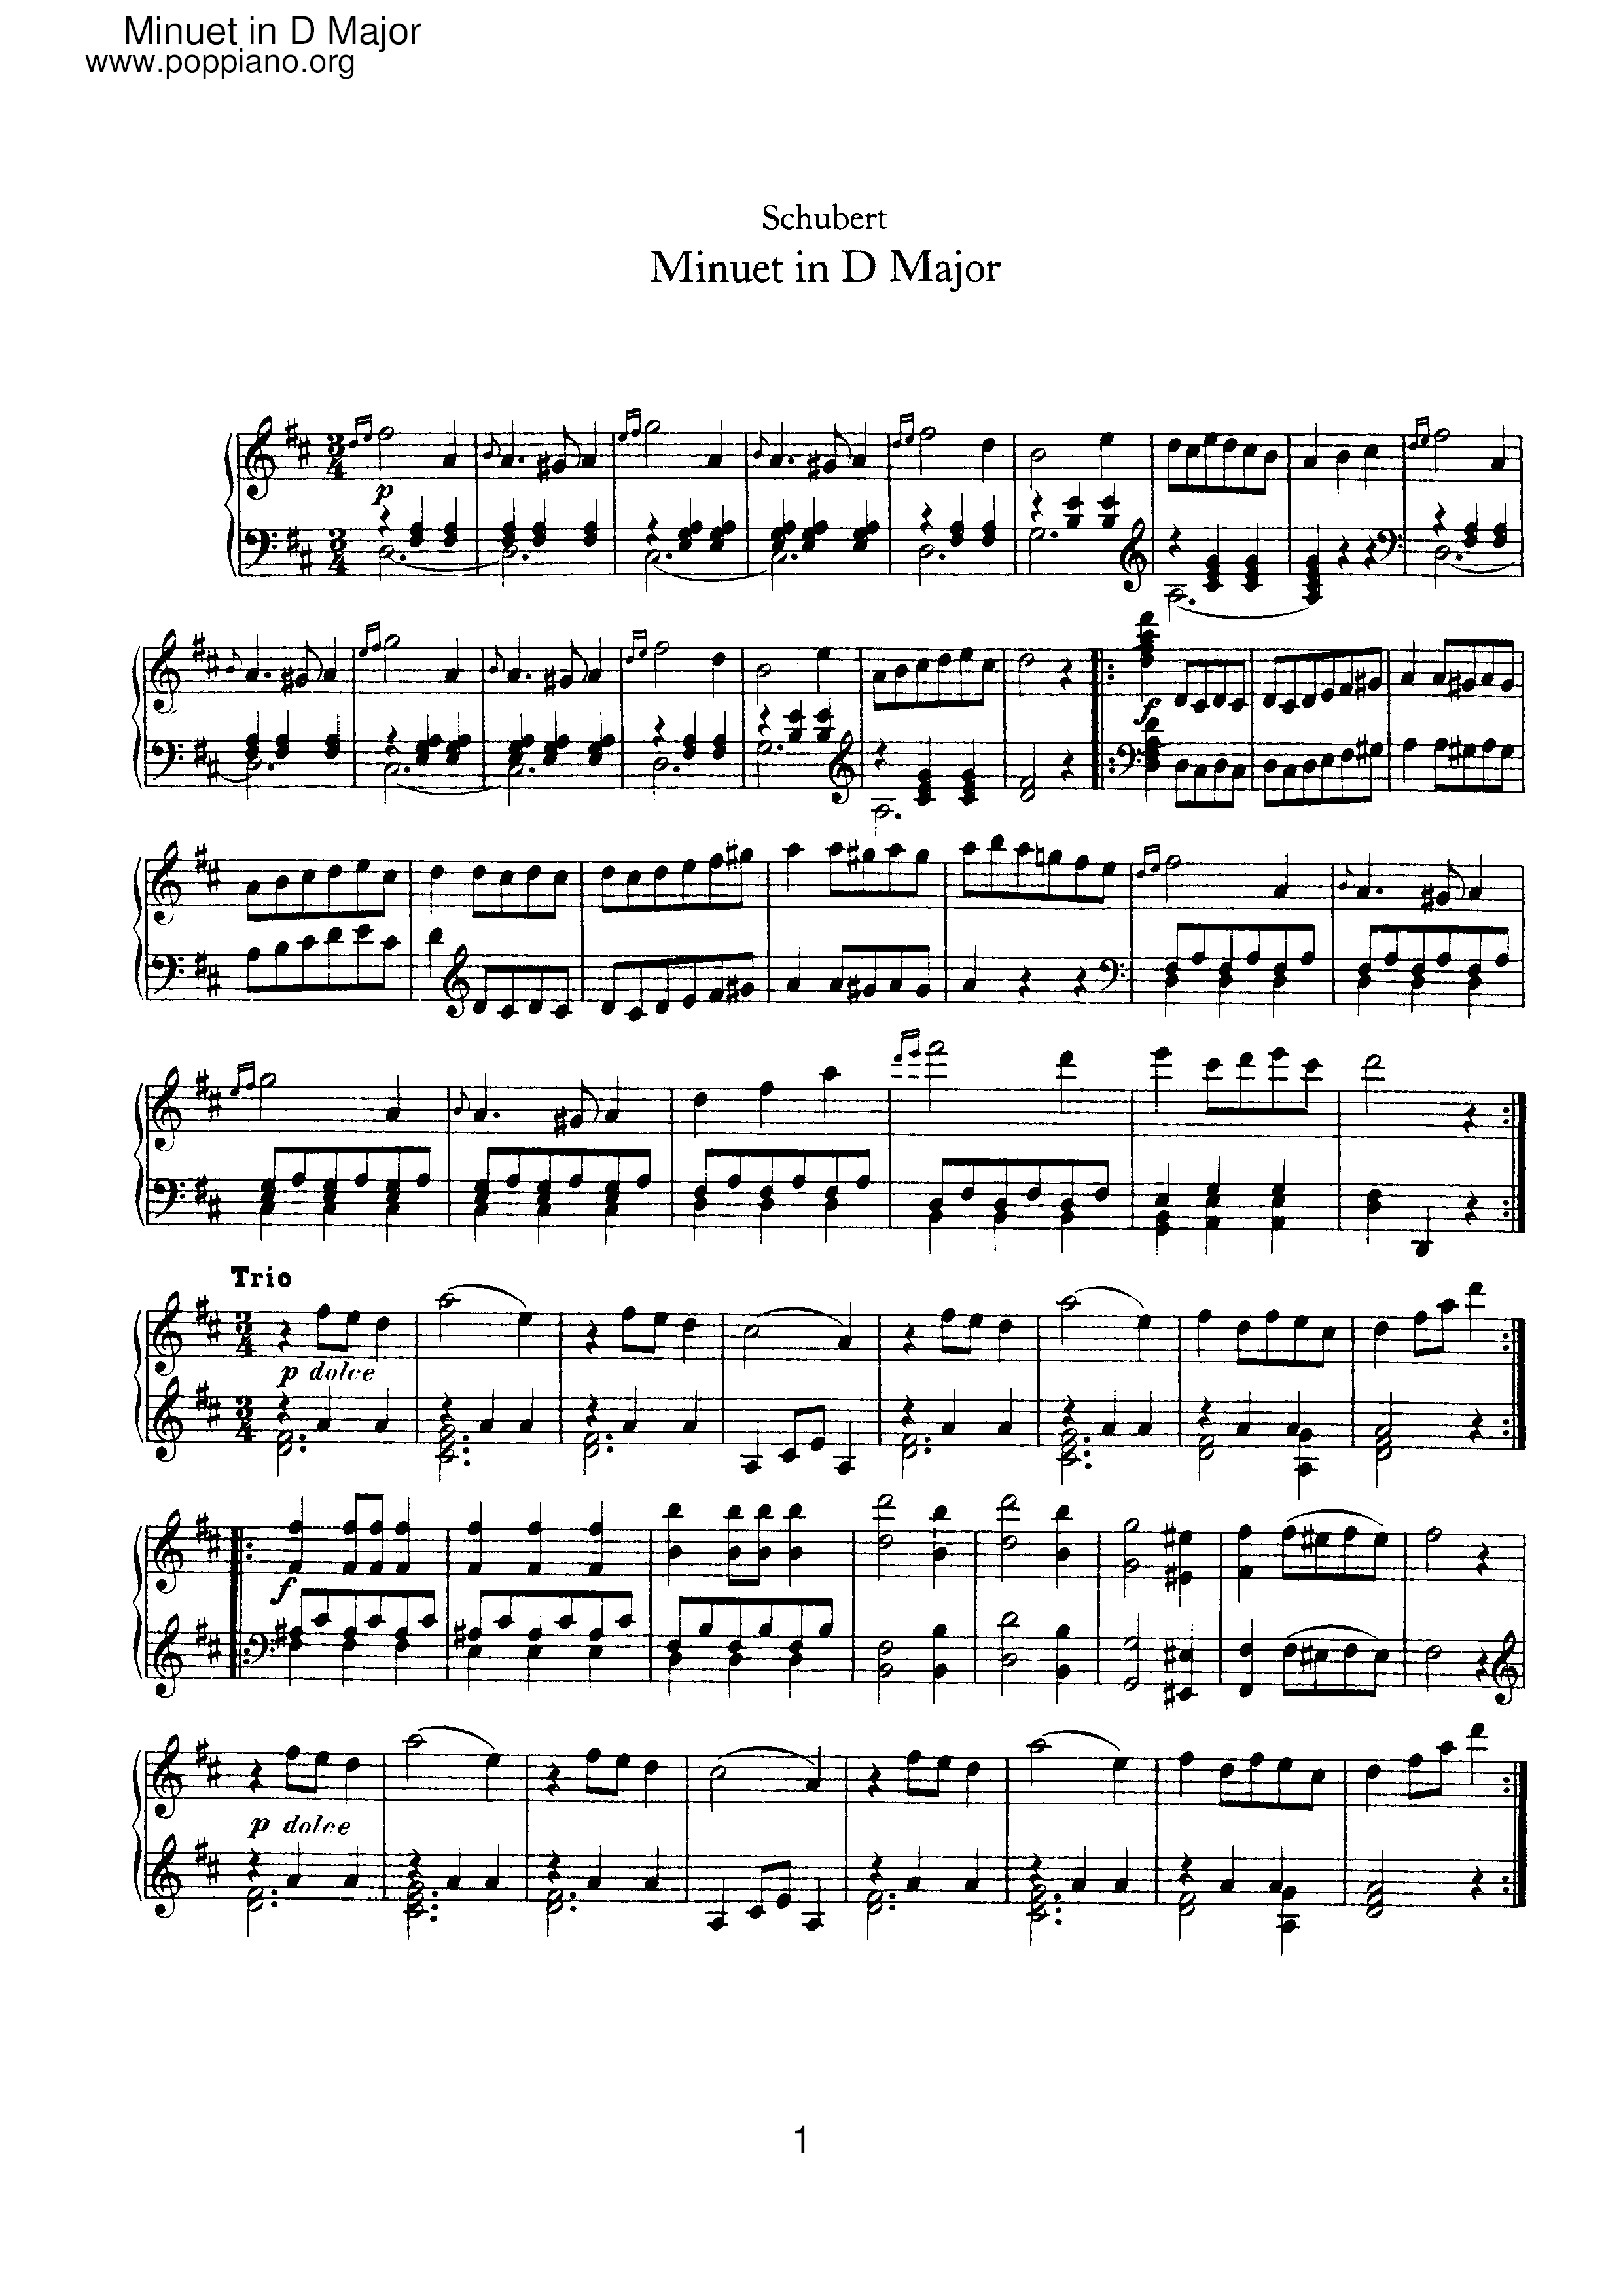 Minuet in D Major Score